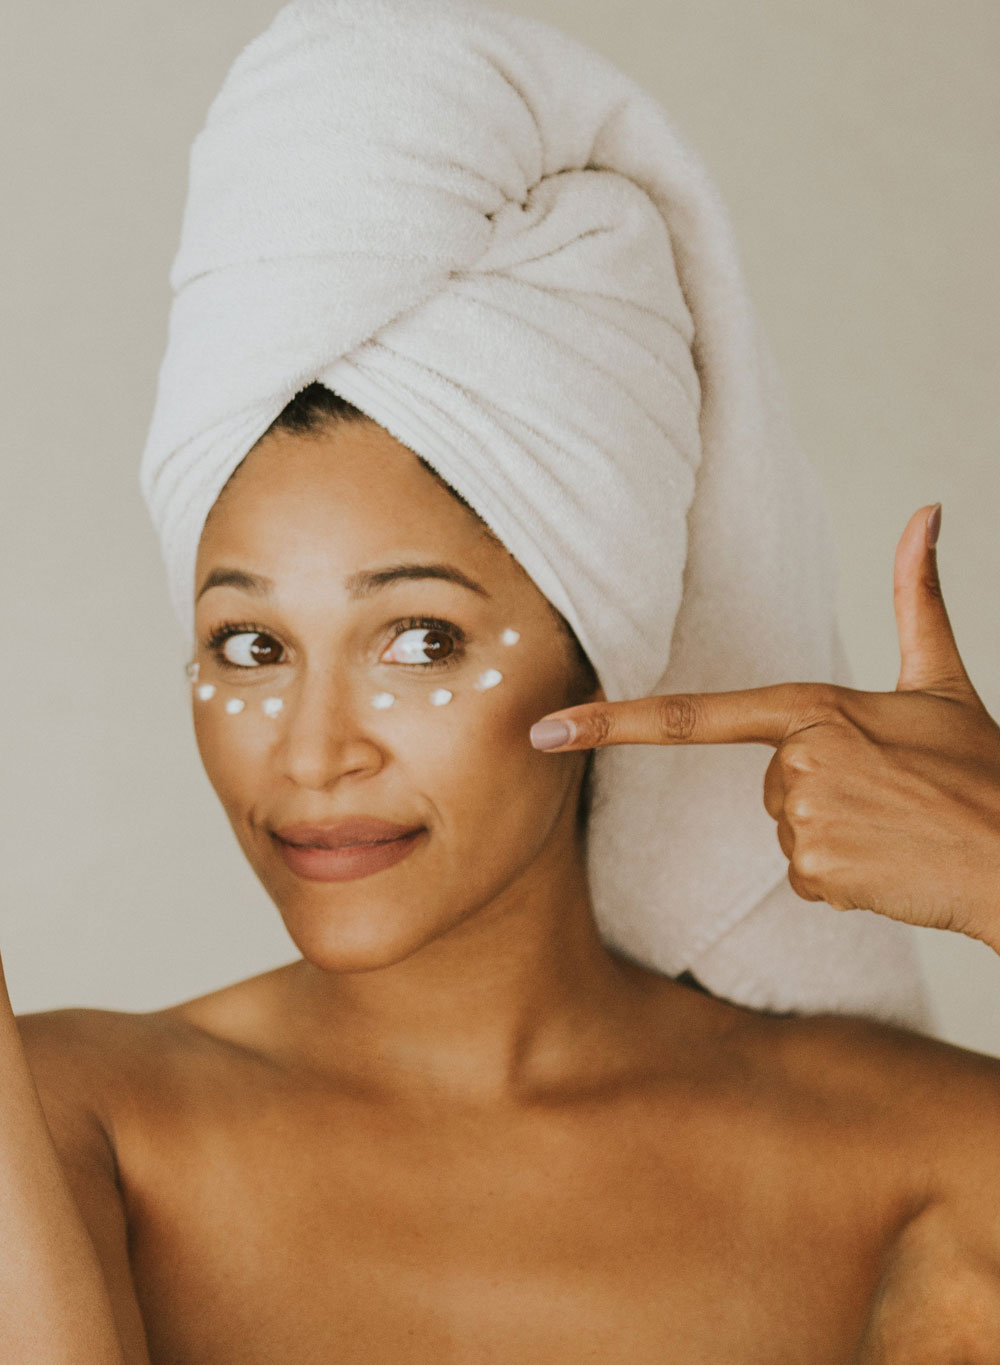 Um Augenringe vorzubeugen oder zu mindern gibt es einige Möglichkeiten, wie das FAQ auf sonrisa mit Profis aus den Bereichen Dermatalogie, Hautpflege und Makeup zeigt.